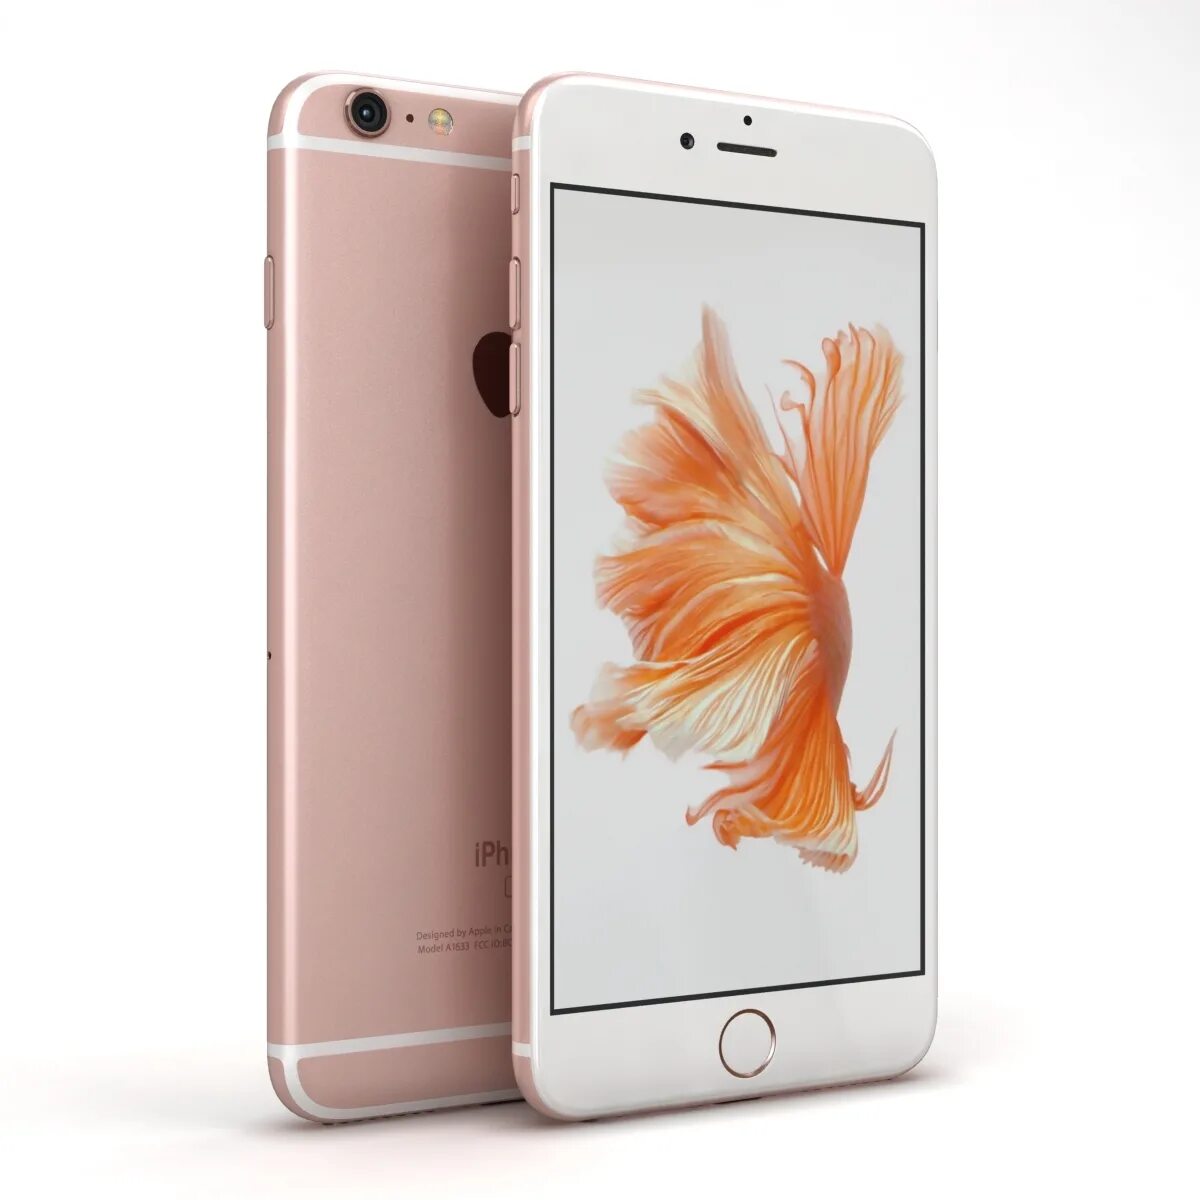 Iphone 6s Rose Gold. Iphone 6s Plus Rose Gold. Iphone 6s Plus 64gb. Apple iphone 6s 32gb (розовое золото).